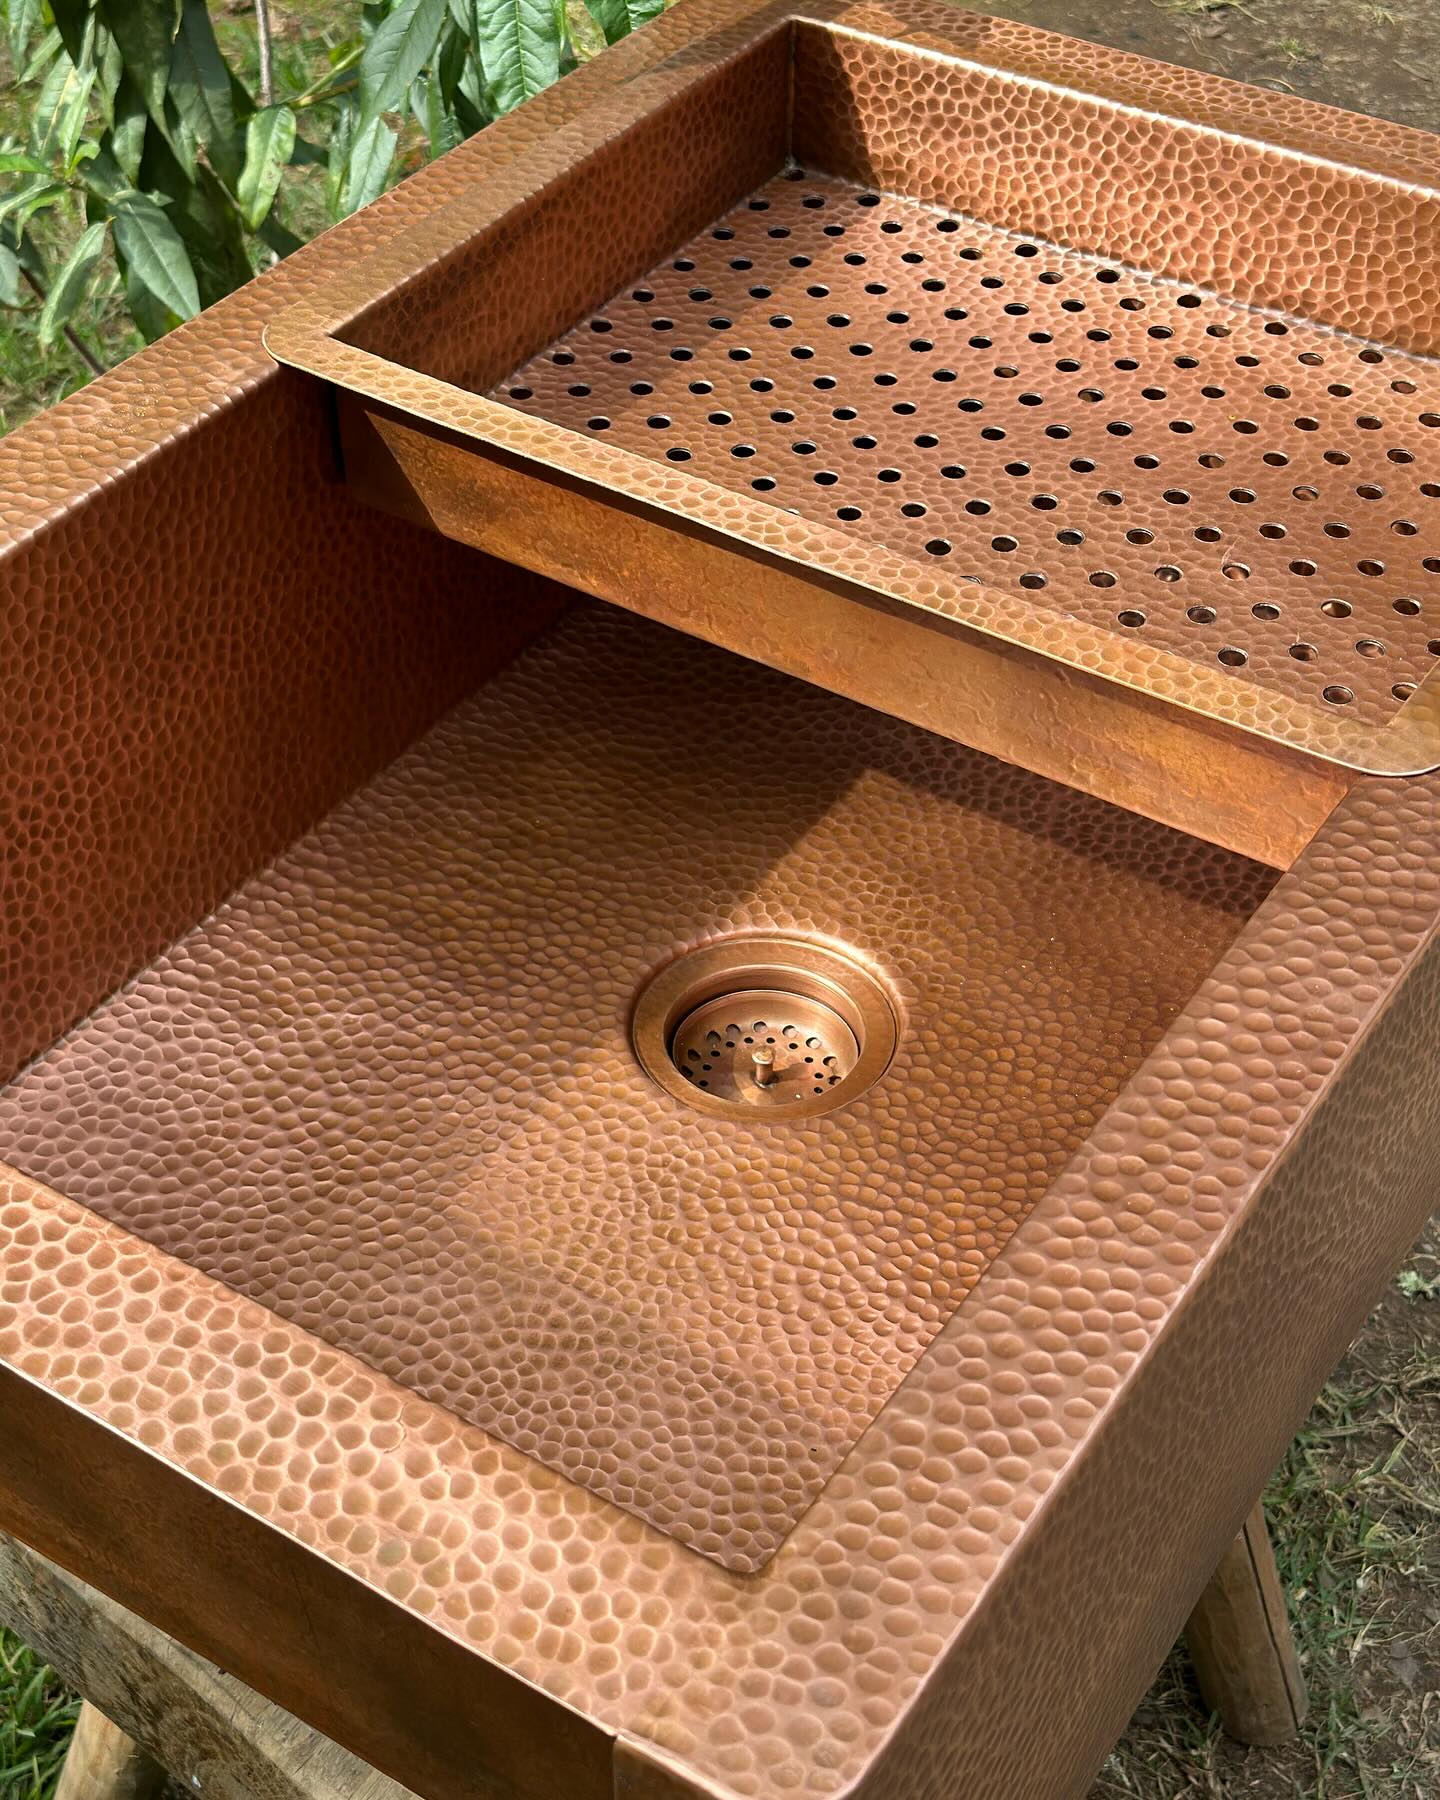 Copper Farmhouse Kitchen sink With Drain Board